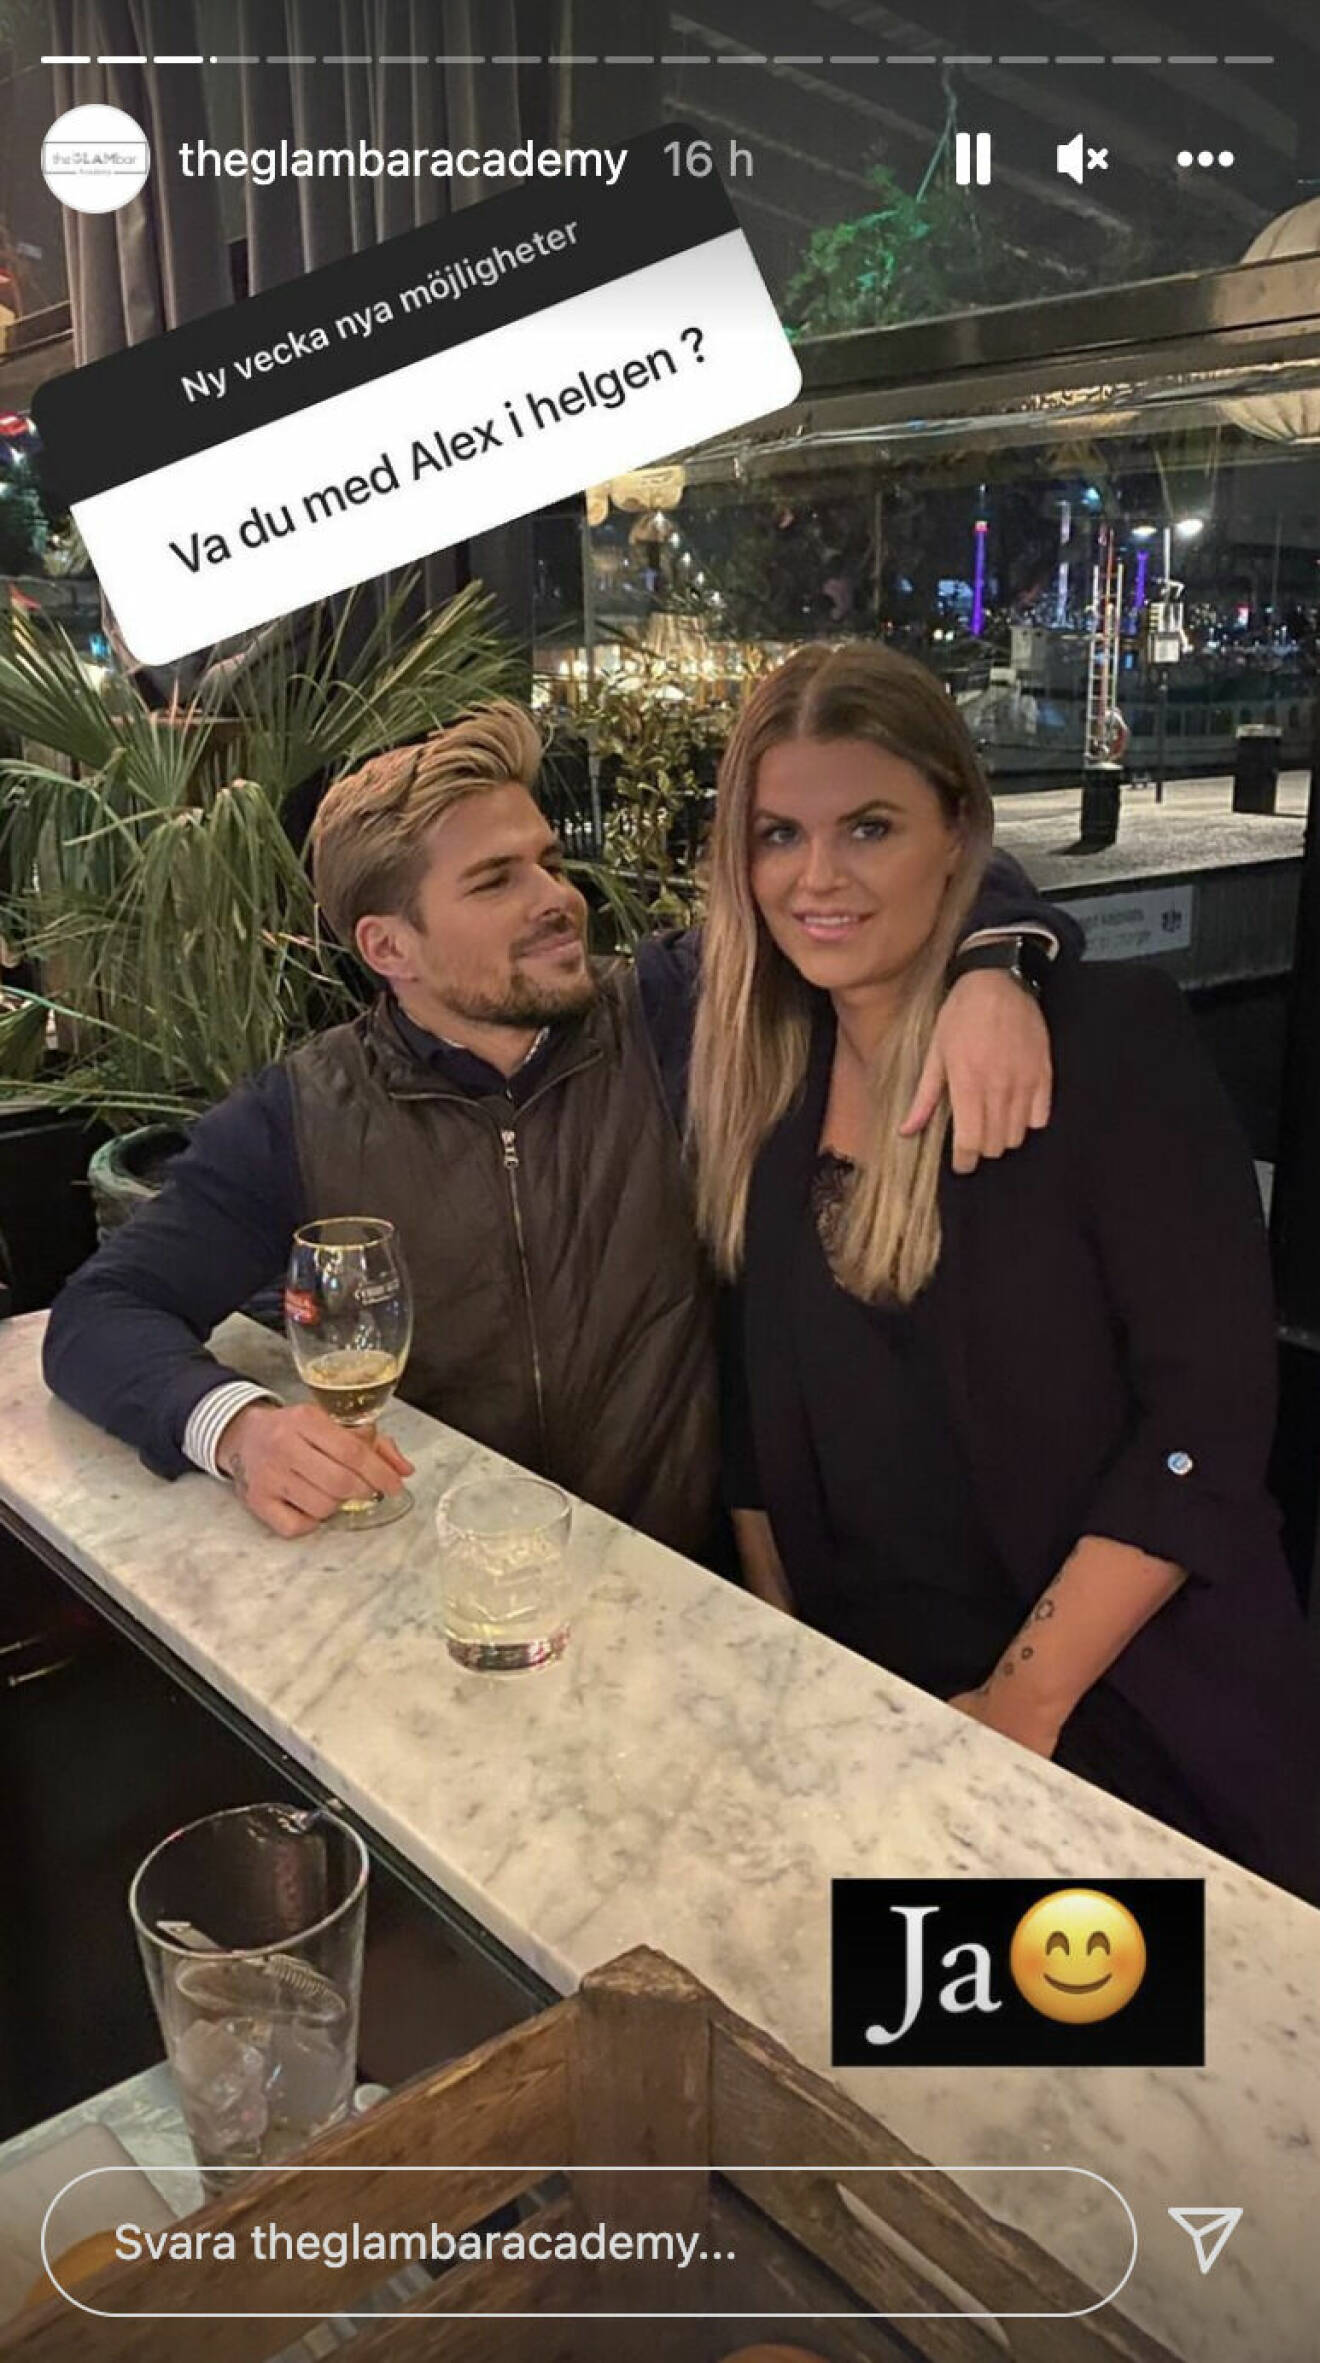 Monika och Alexander på dejt tillsammans i Stockholm under sista helgen i februari. Visst skulle väl de två blondinerna vara ett mycket tjusigt par?